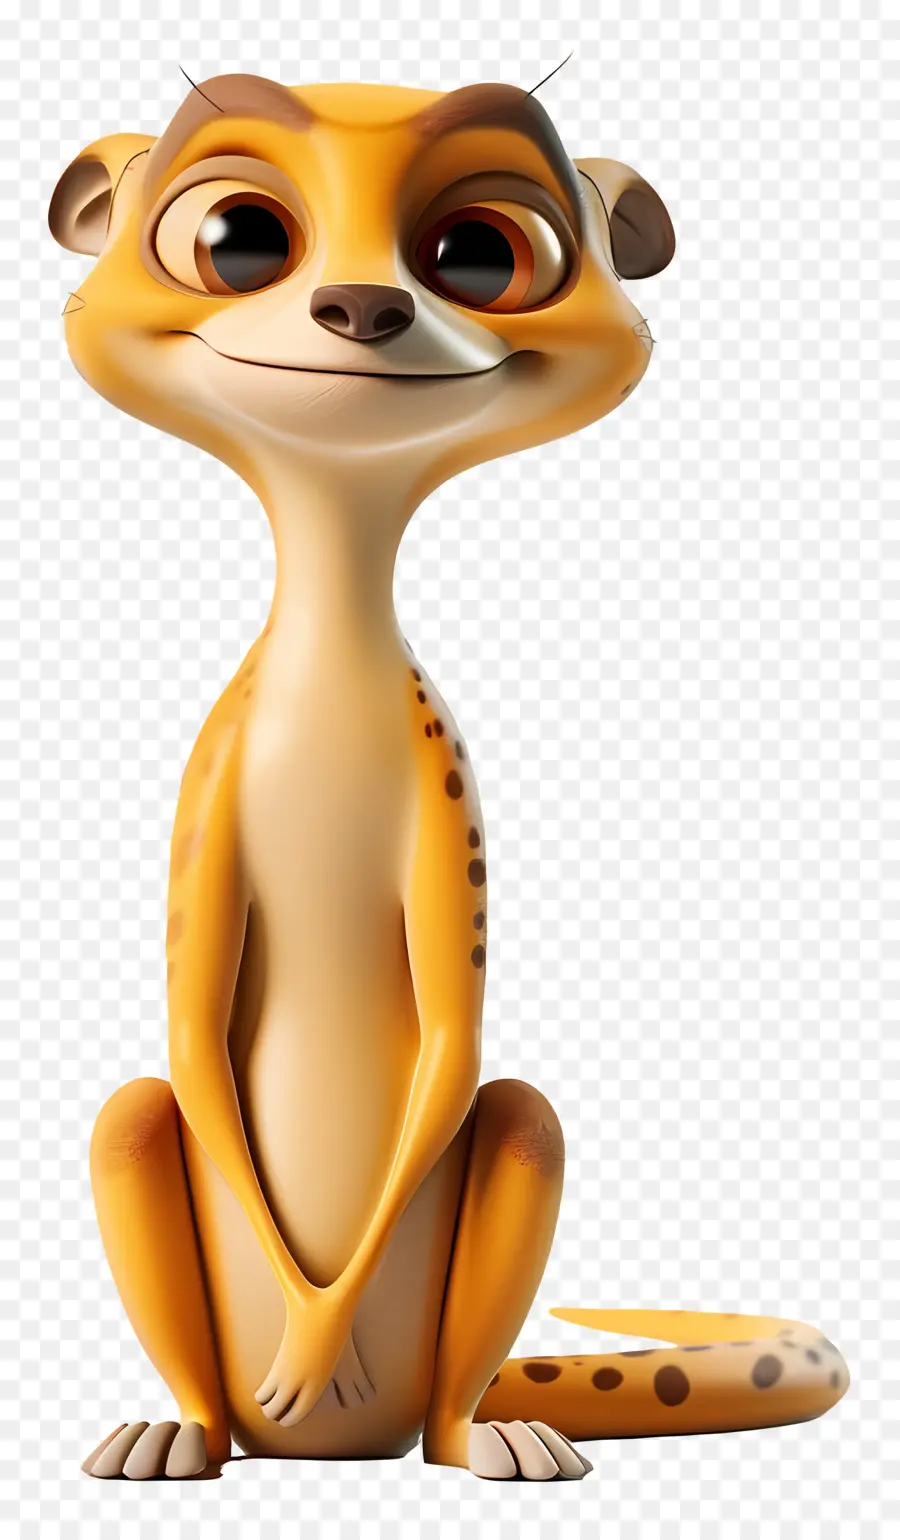 Timon Meerkat hoạt hình động vật mỉm cười - Phim hoạt hình meerkat ngồi với chân chéo, mỉm cười